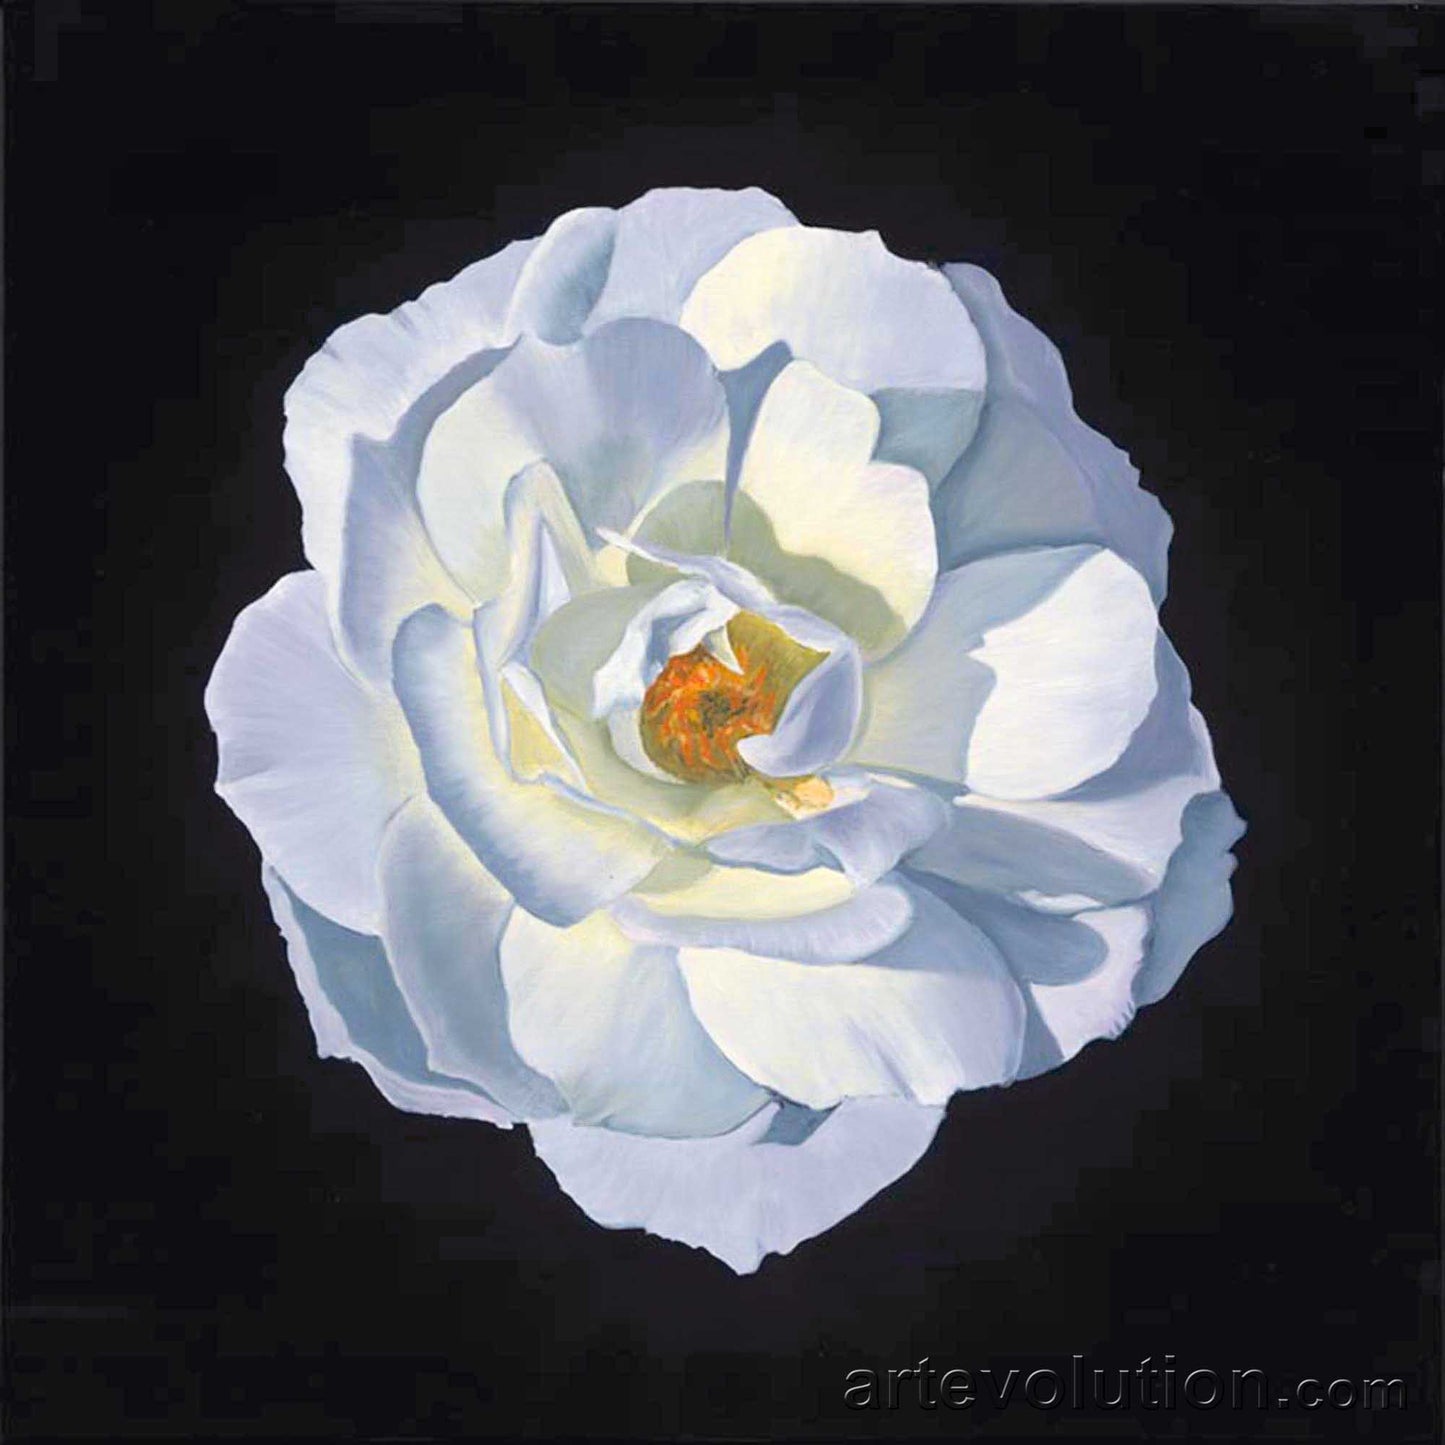 Portrait of a White Camellia